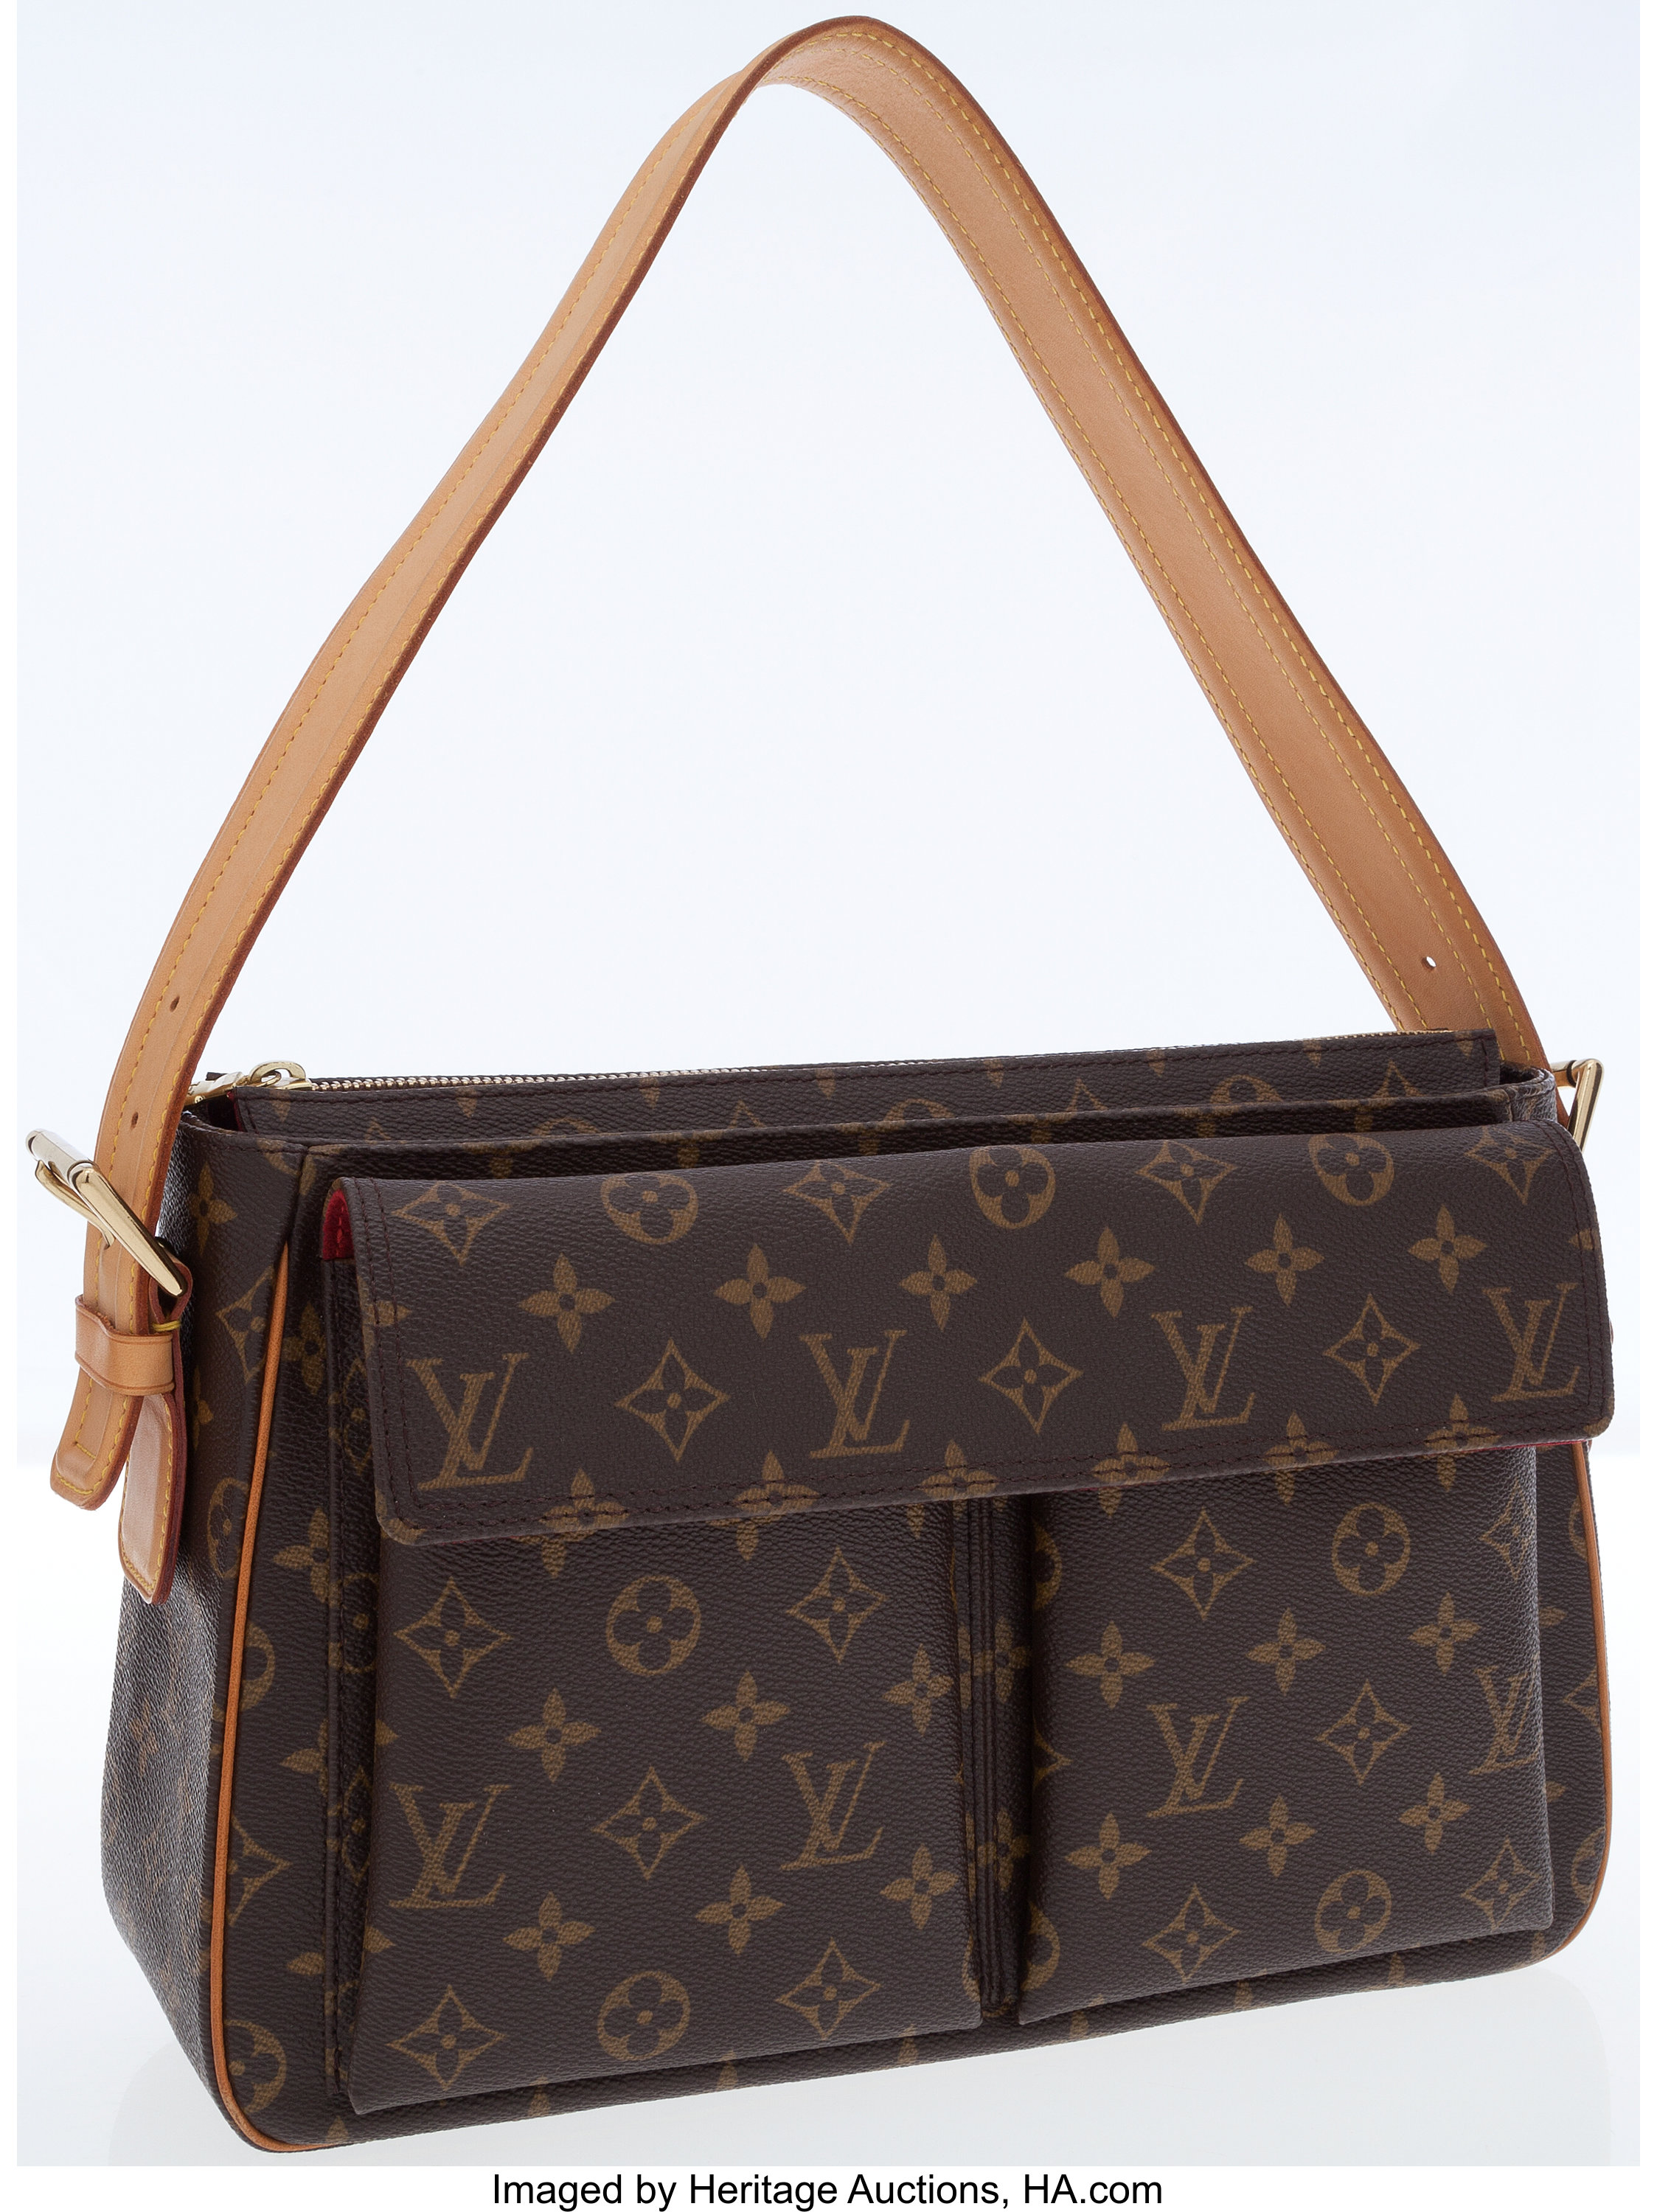 Louis Vuitton Louis Vuitton Viva Cite MM Monogram Canvas Shoulder Bag